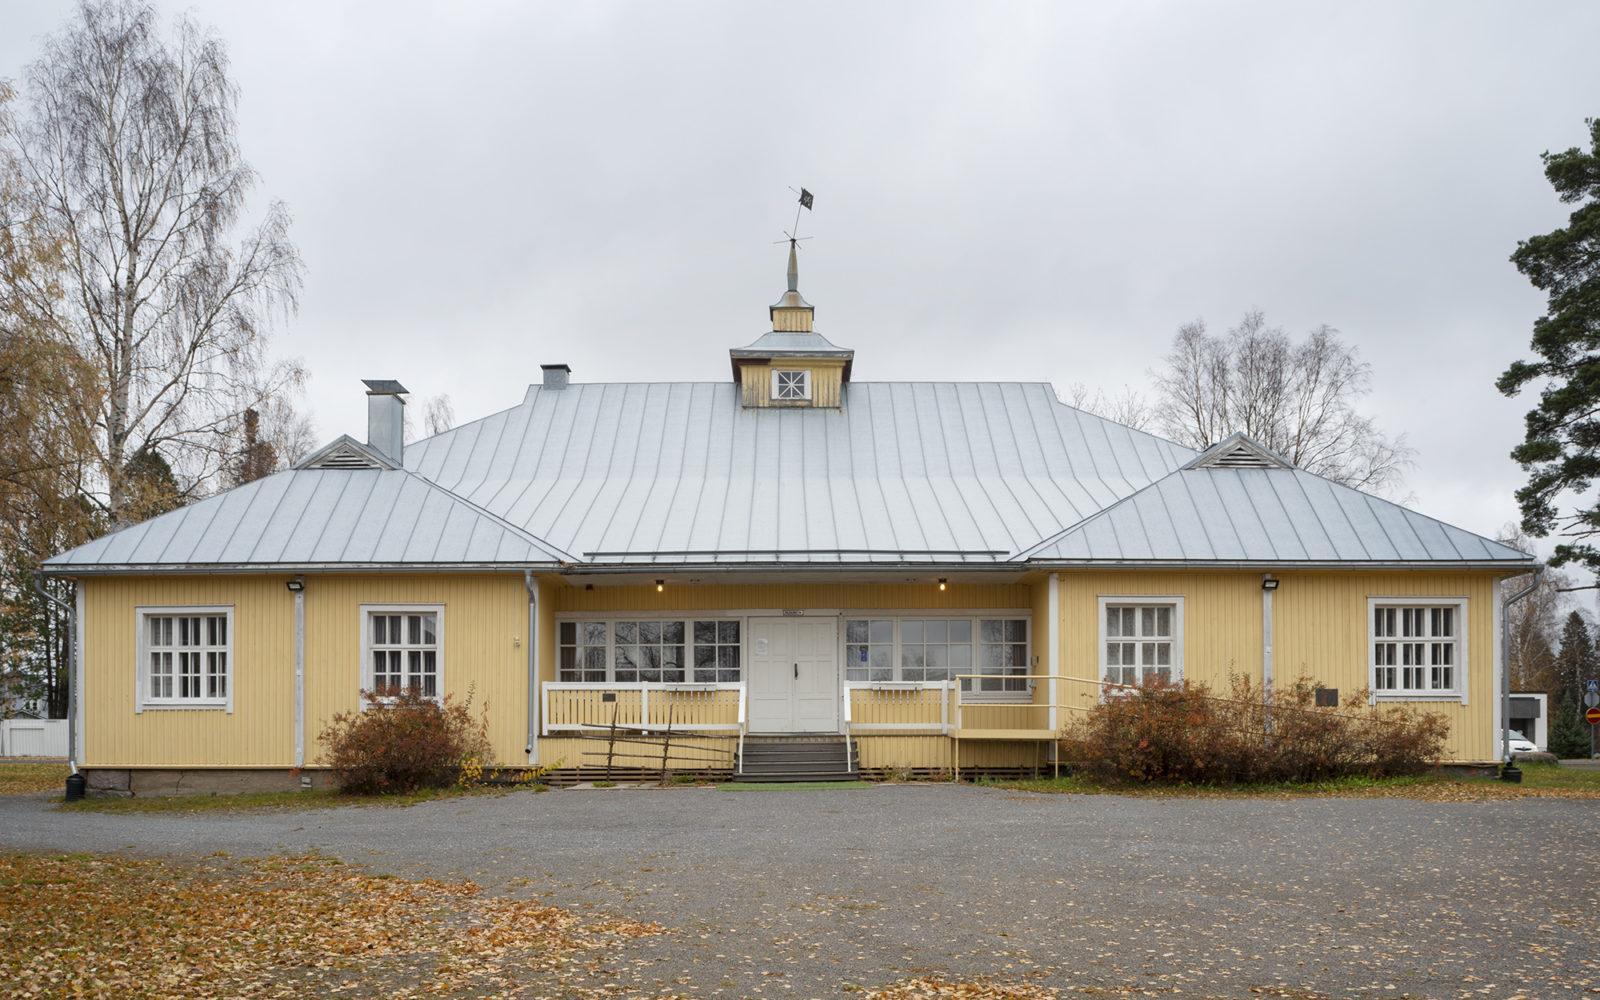 Nuorisoseuran talo, Alajärvi. Kuva: Maija Holma, Alvar Aalto -säätiö